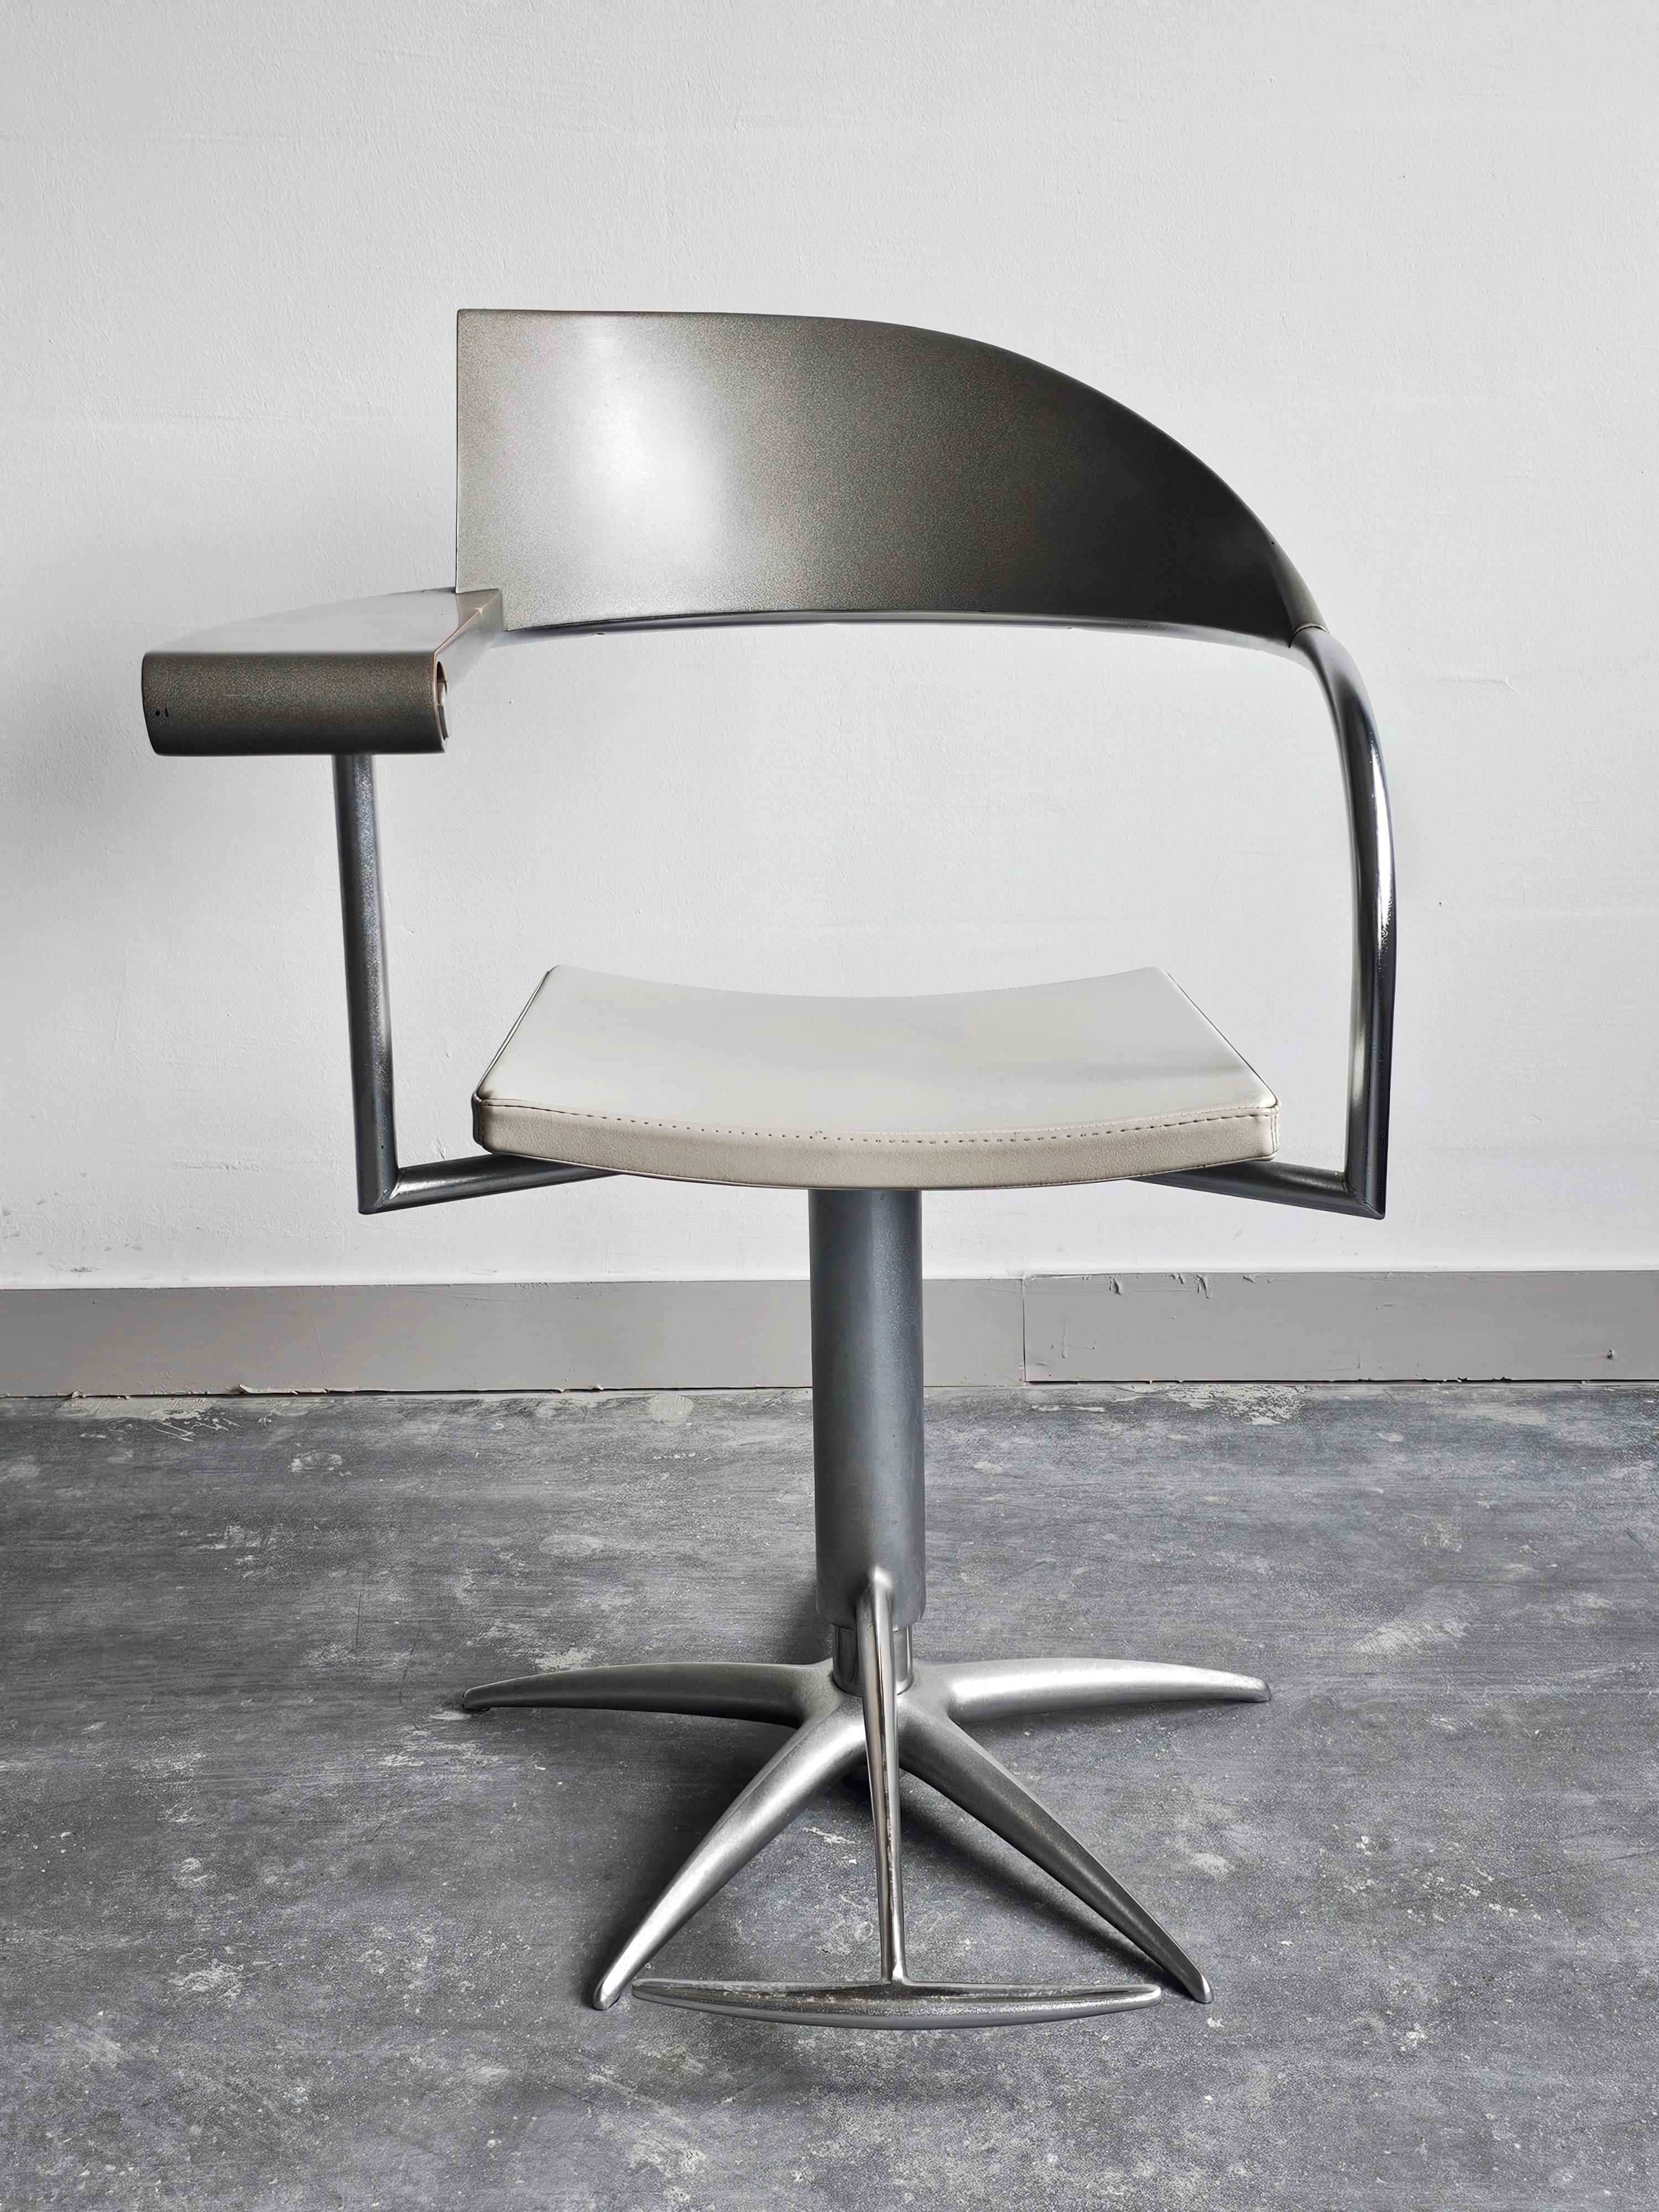 Dans cette annonce, vous trouverez 4 fauteuils de barbier pivotants exceptionnellement rares, appelés fauteuils Techno, conçus par Philippe Starck pour L'Oréal.

Ces chaises représentent le summum du design postmoderne avec des lignes étonnantes et